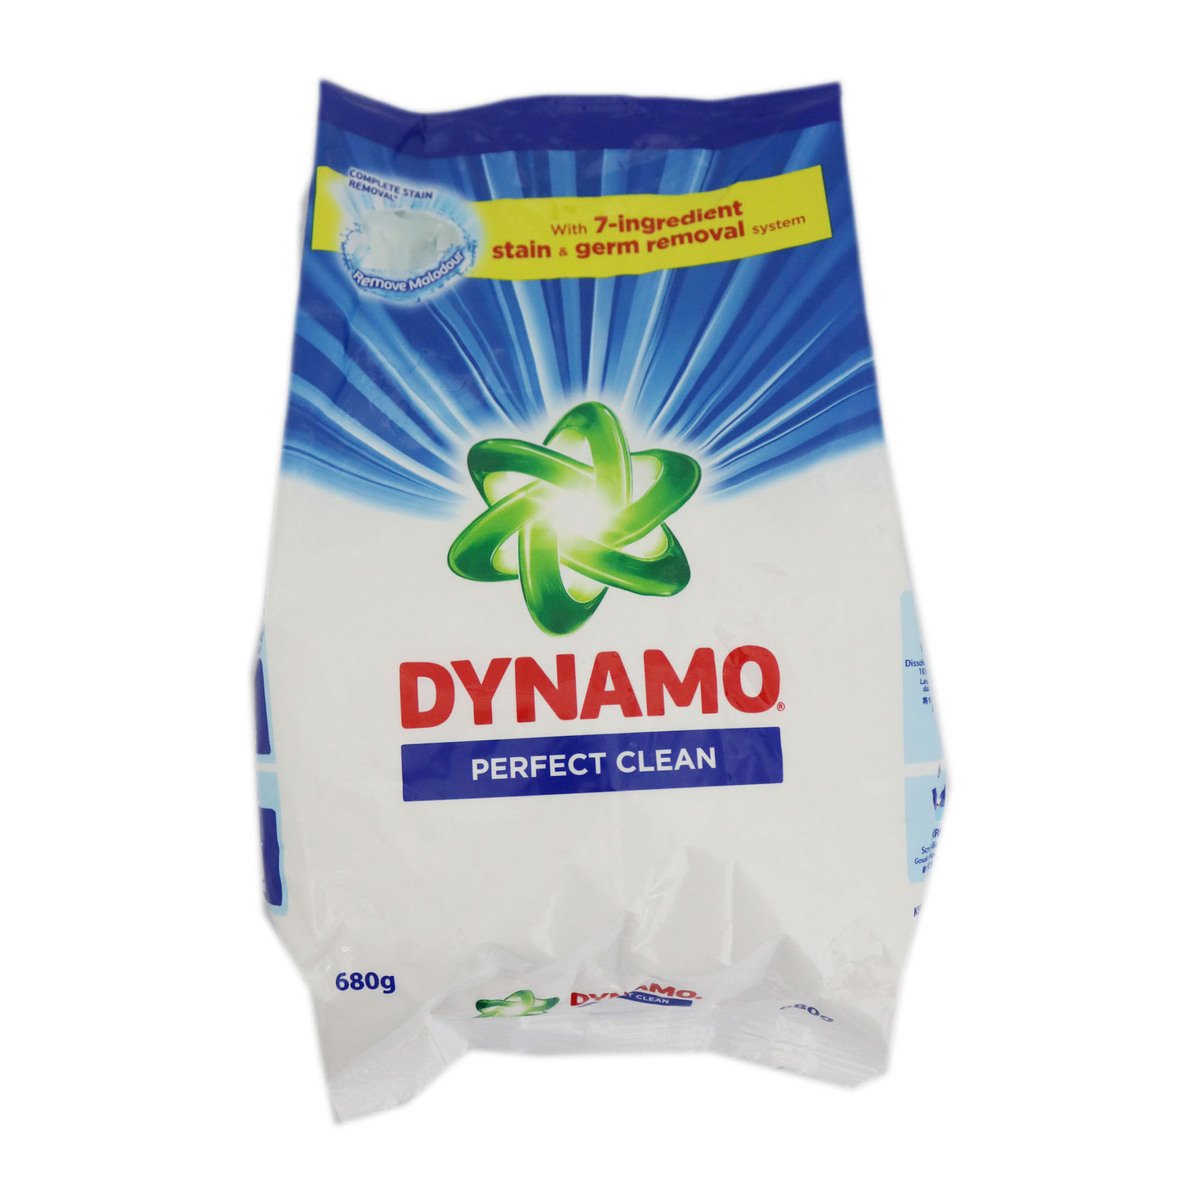 Dynamo Washing Powder Regular 620g